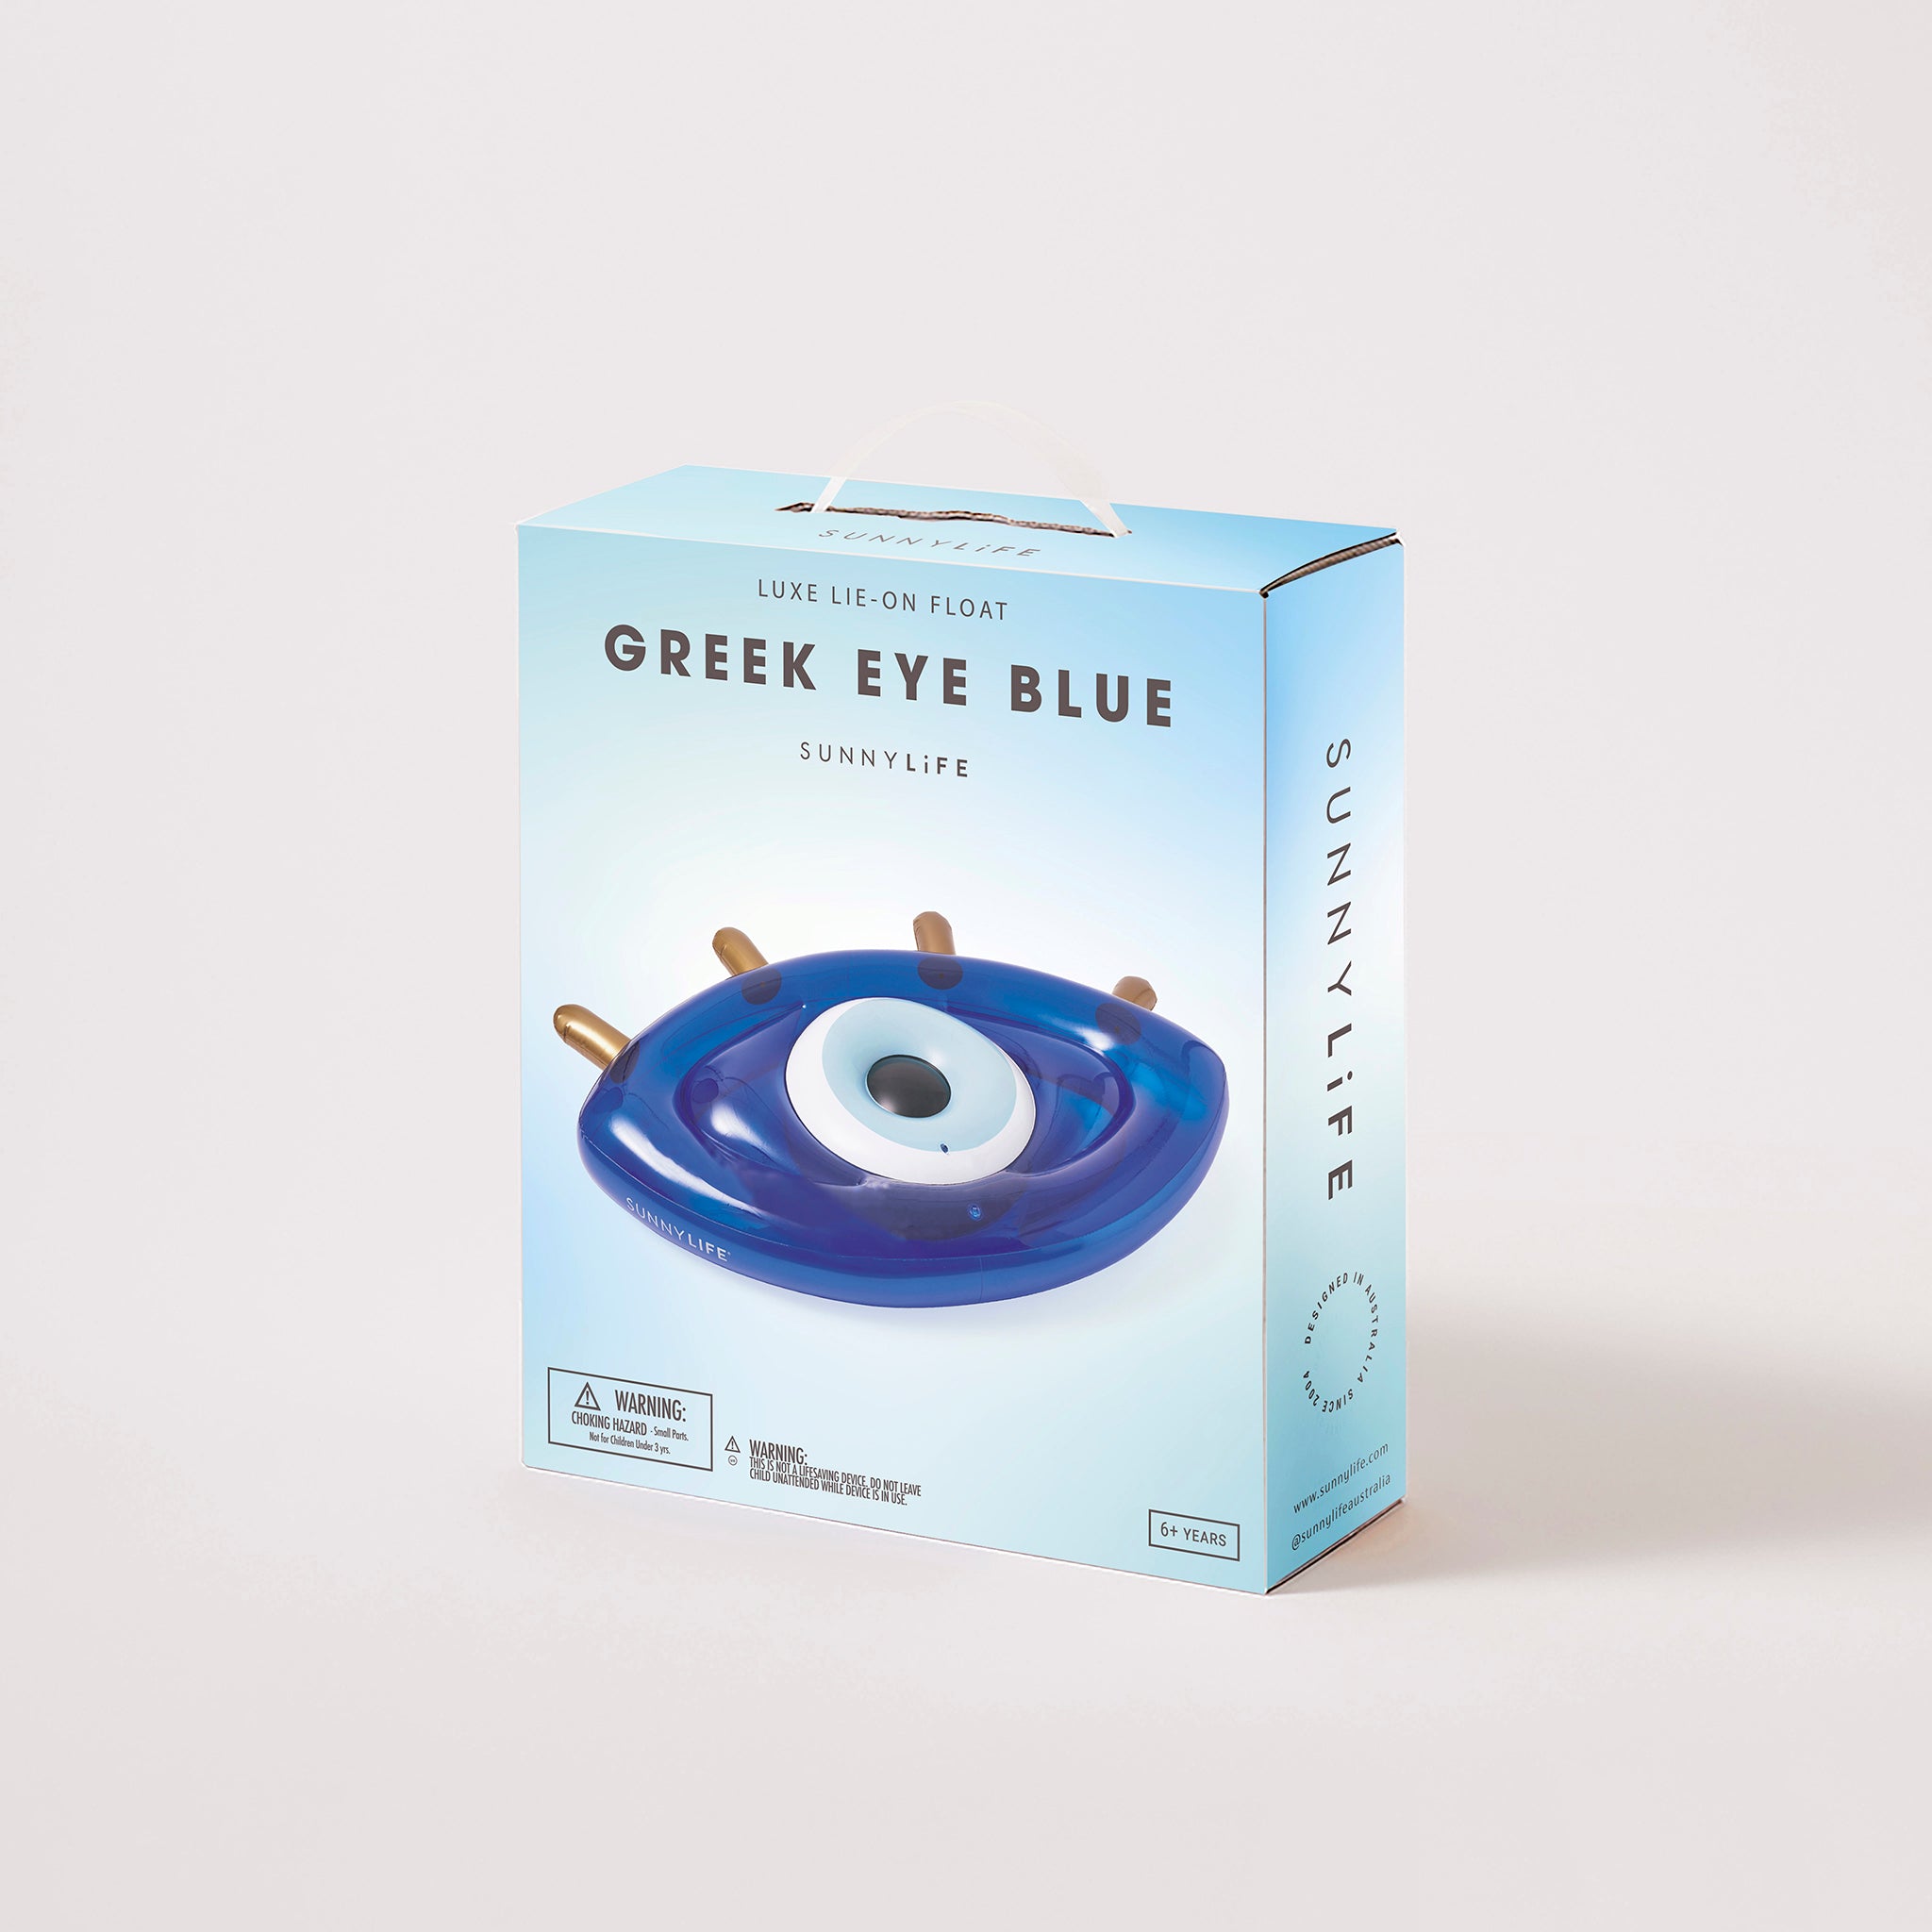 Luxe Lie-On Float | Greek Eye Blue